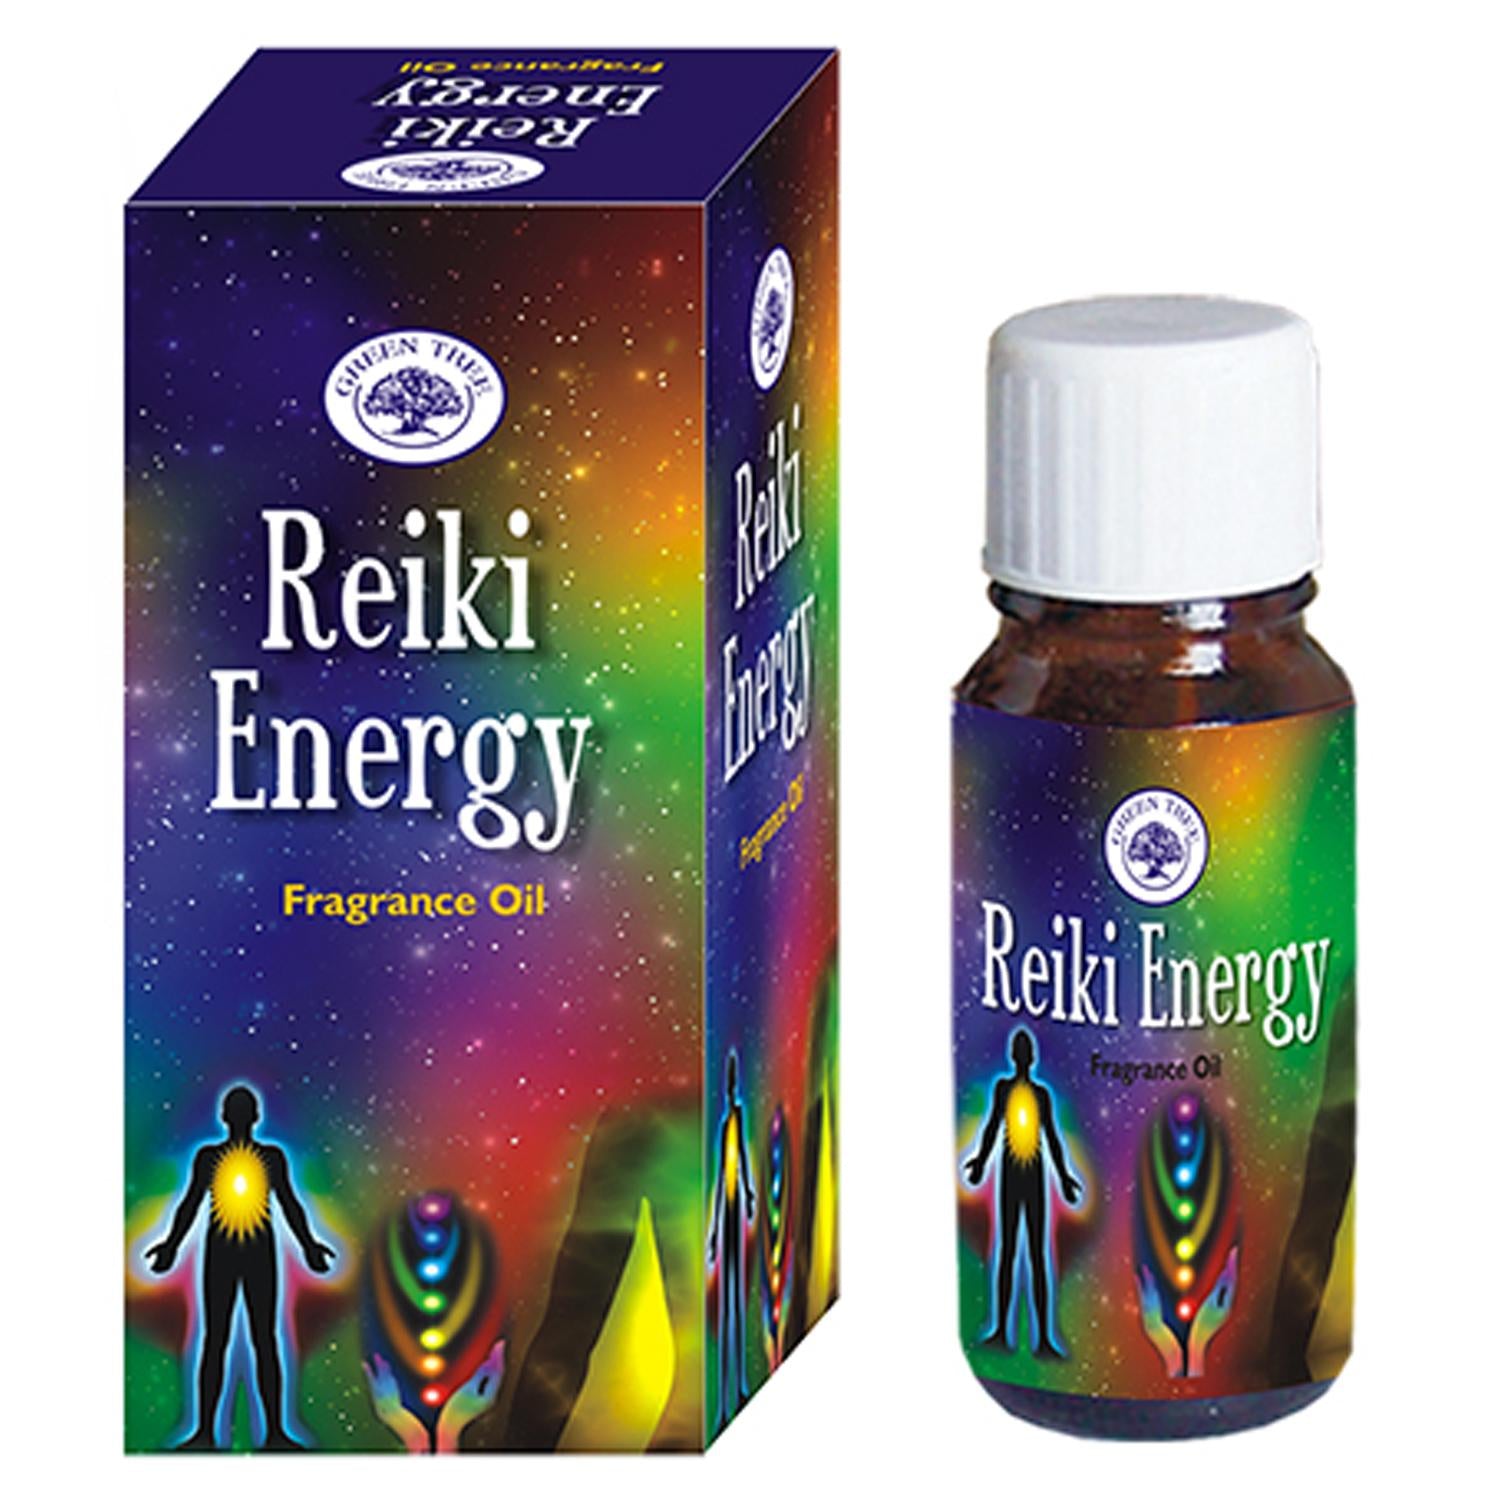 reiki aromatherapy, reiki scents, reiki oil, reiki fragrance oil, reiki essential oils, energy healing aromatherapy, fragrance for diffuser, fragrance for oil burder